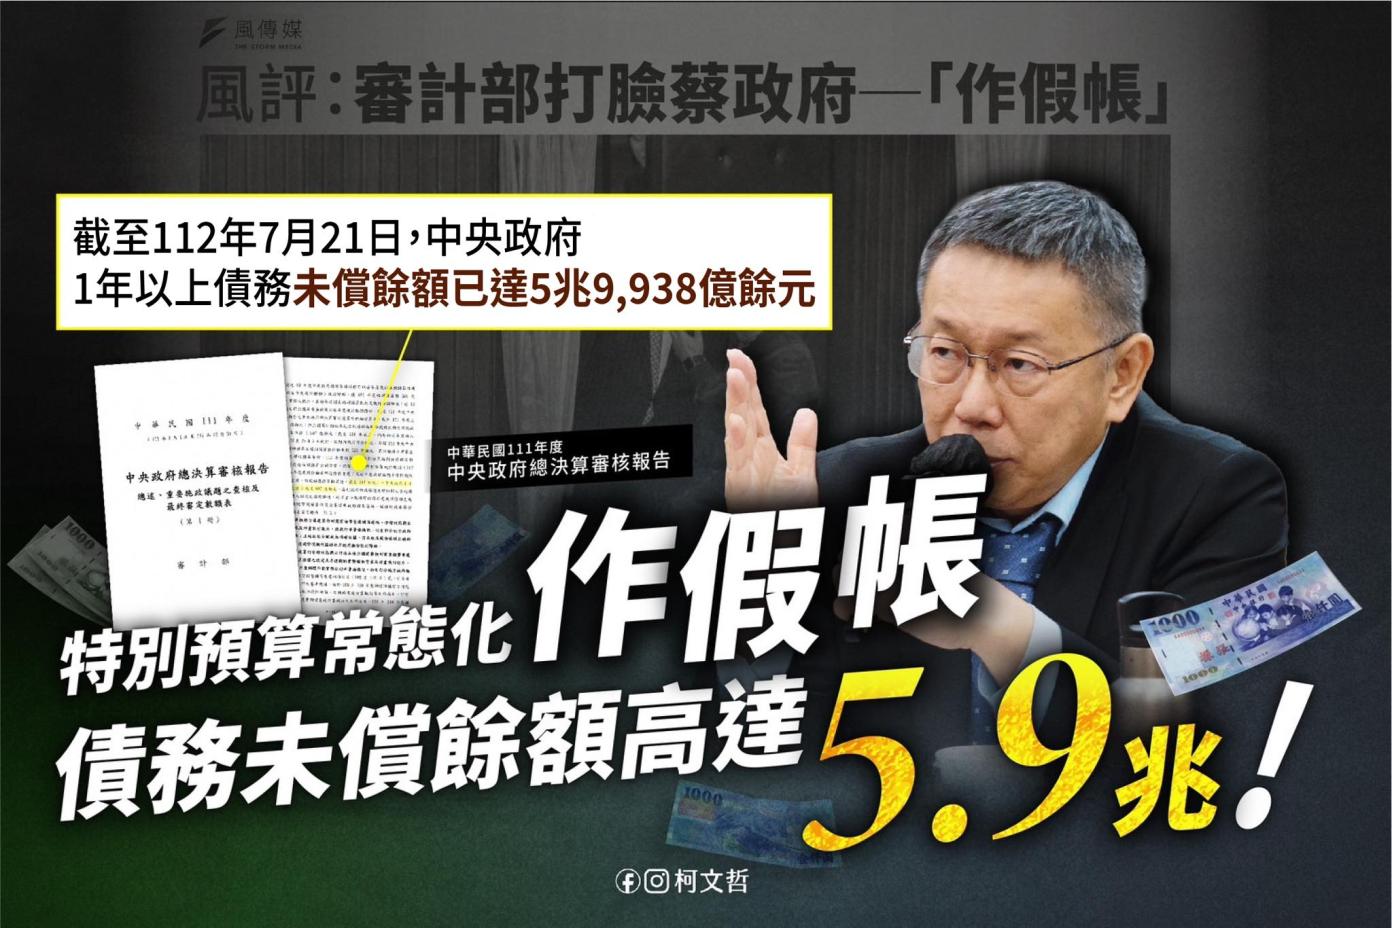 台灣民眾黨總統參選人柯文哲對前瞻預算和政府財政紀律提出看法。翻攝柯文哲臉書